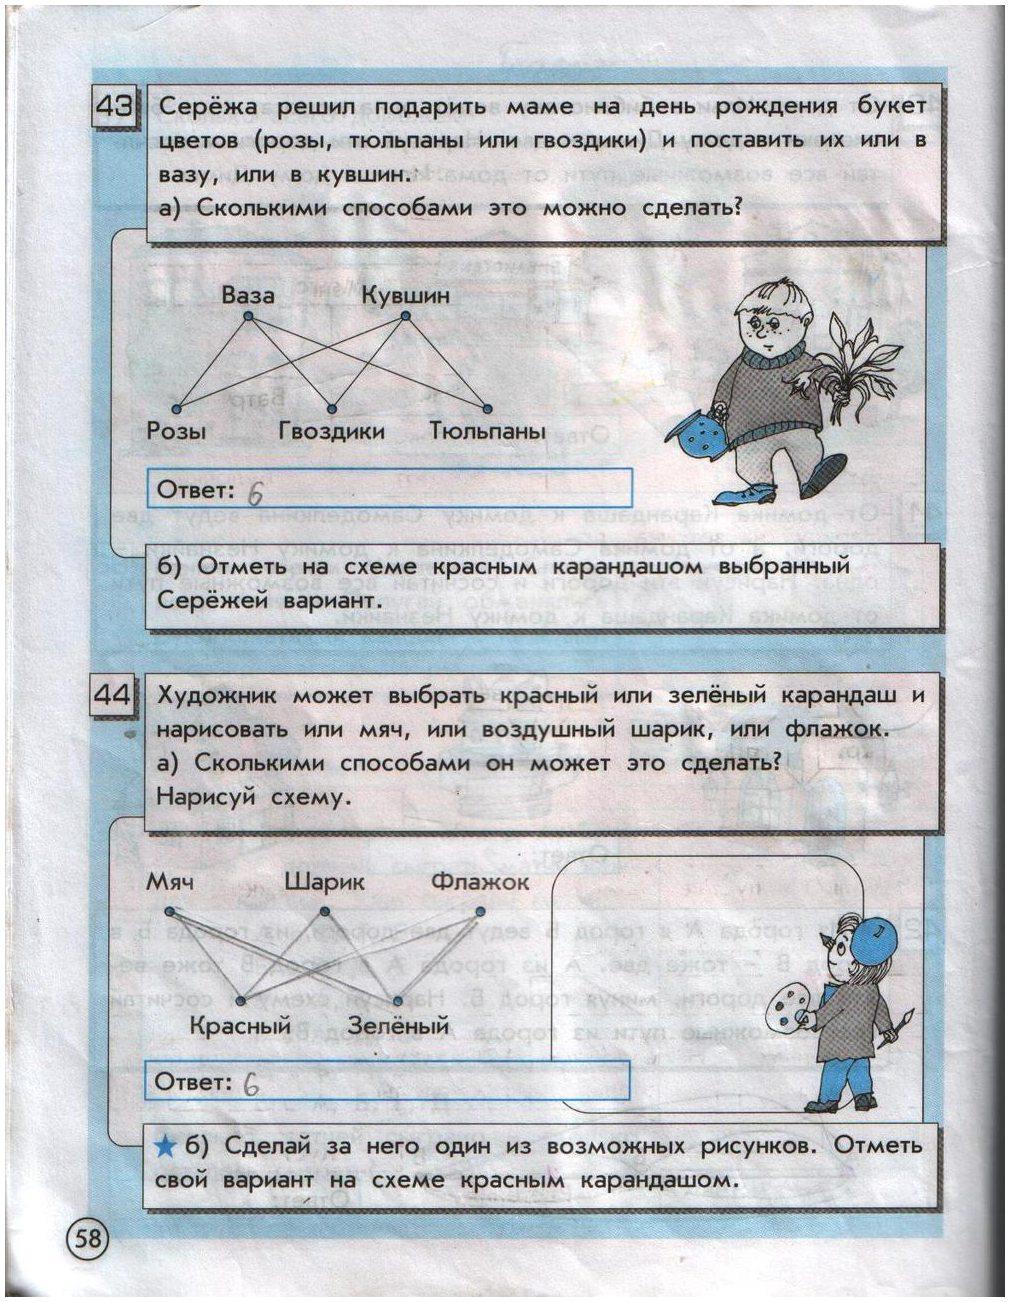 гдз 2 класс информатика часть 2 Горячев, Горина страница 58